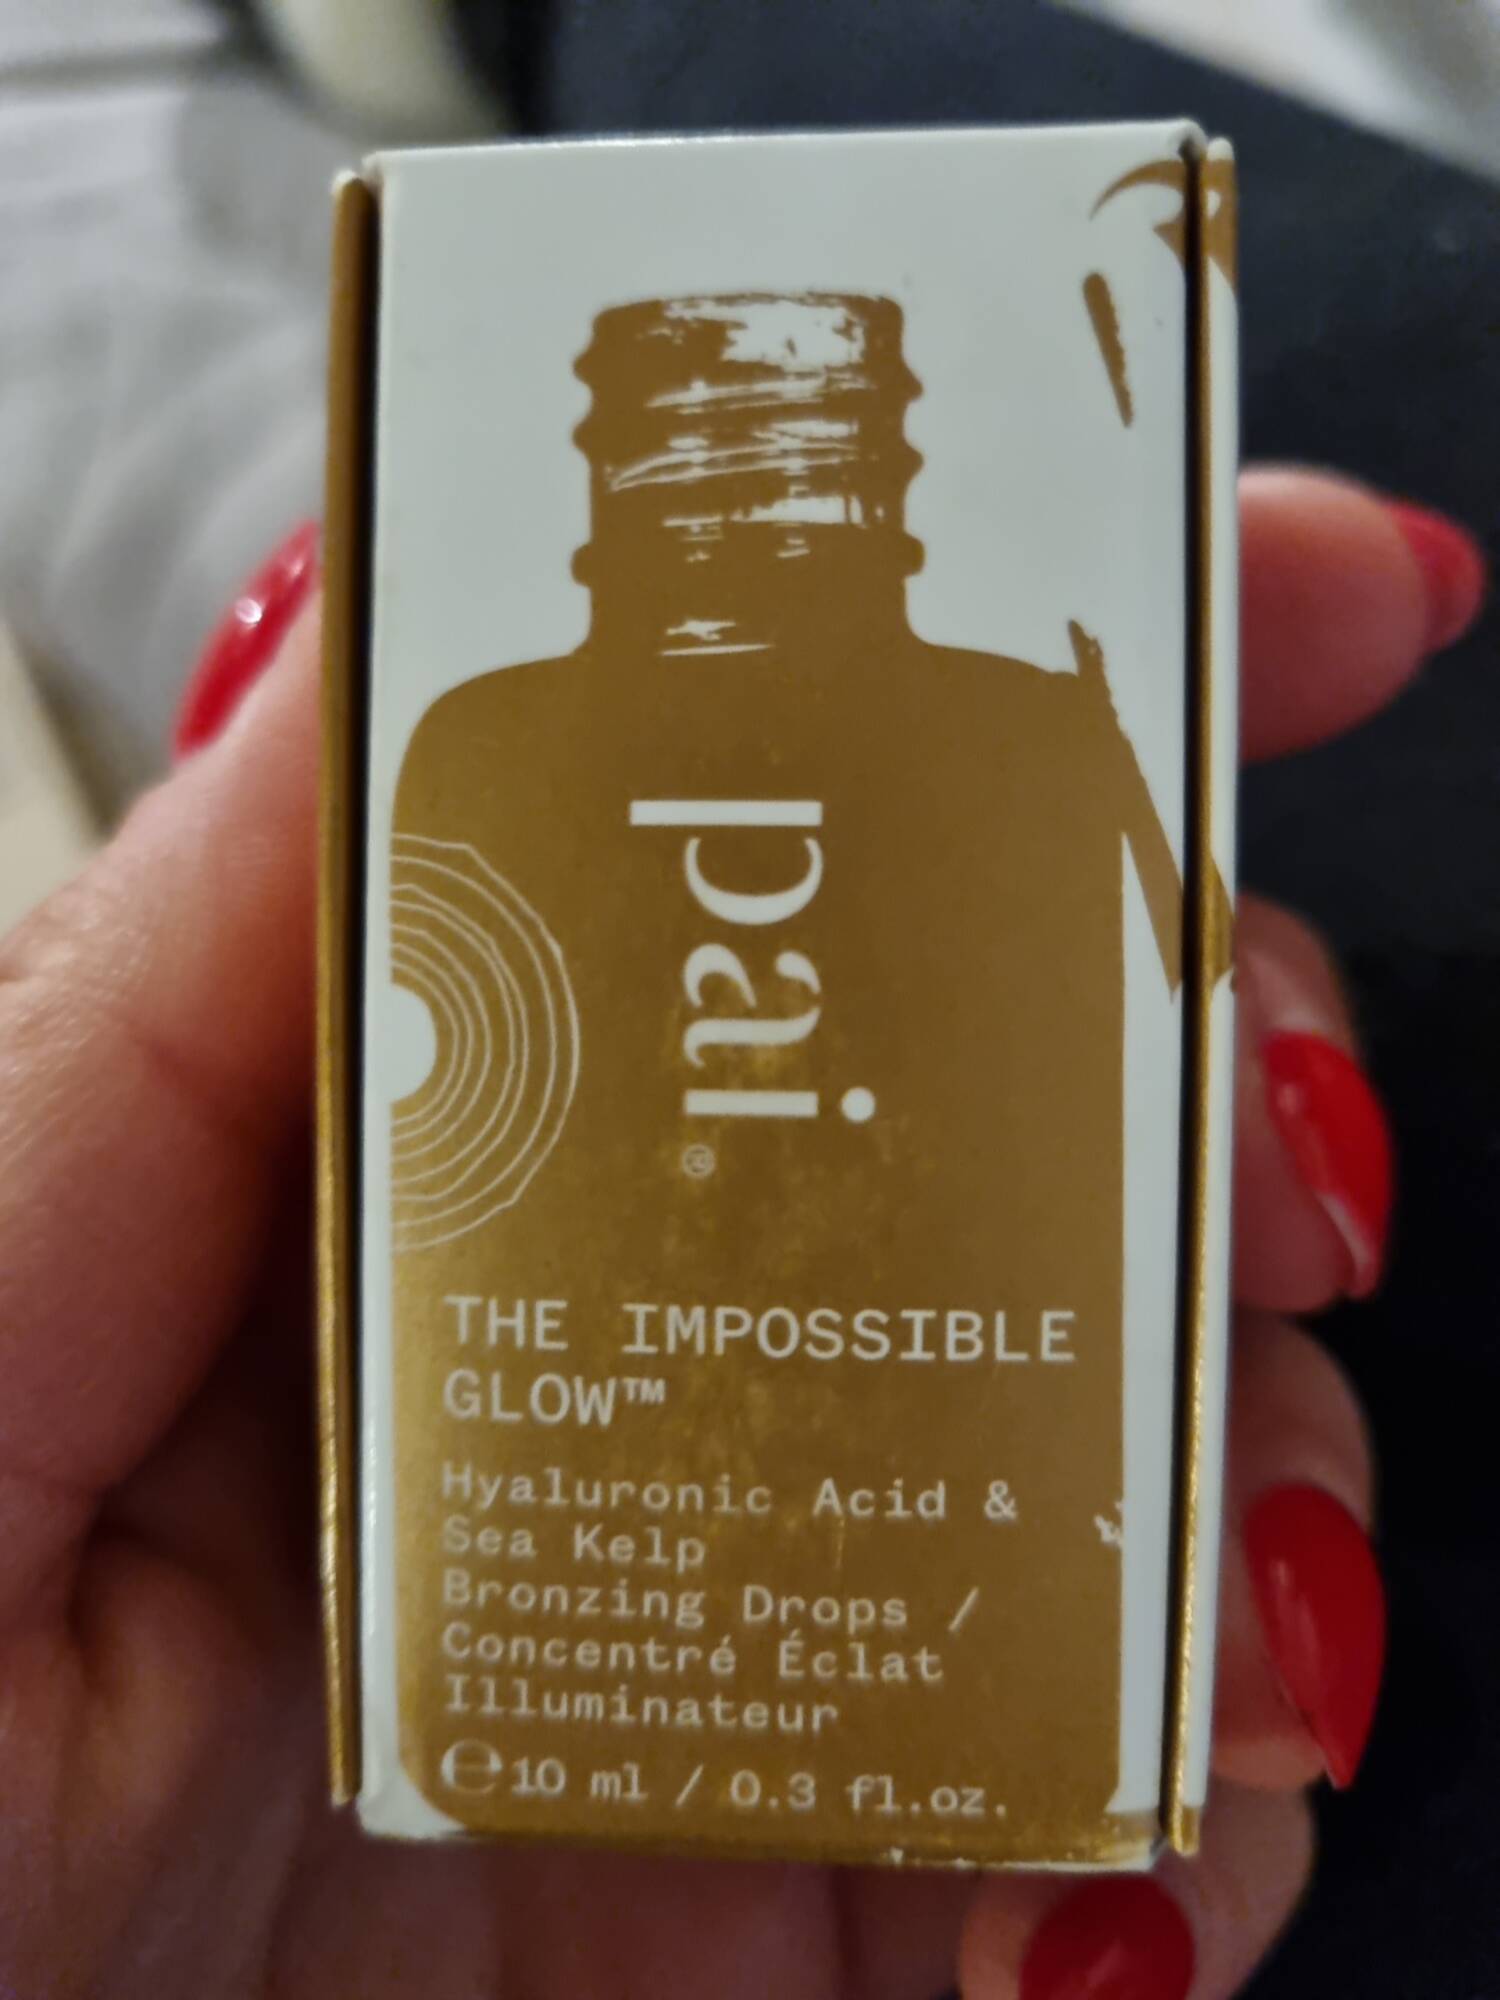 PAI - The impossible glow - Concentré éclat illuminateur